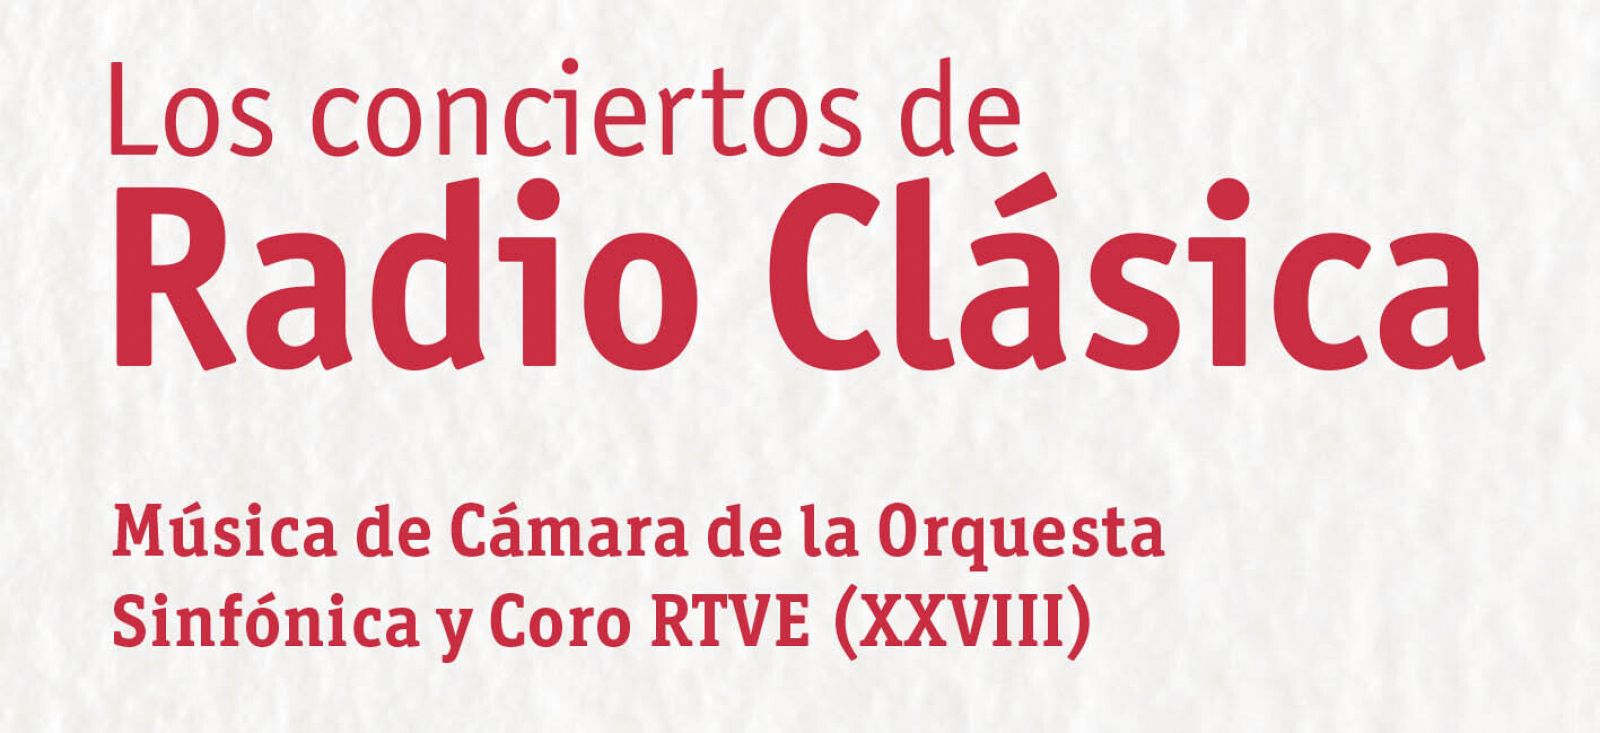 Comienza el XXVIII Ciclo de Msica de Cmara de la Orquesta y Coro RTVE en el marco de Los conciertos de Radio Clsica